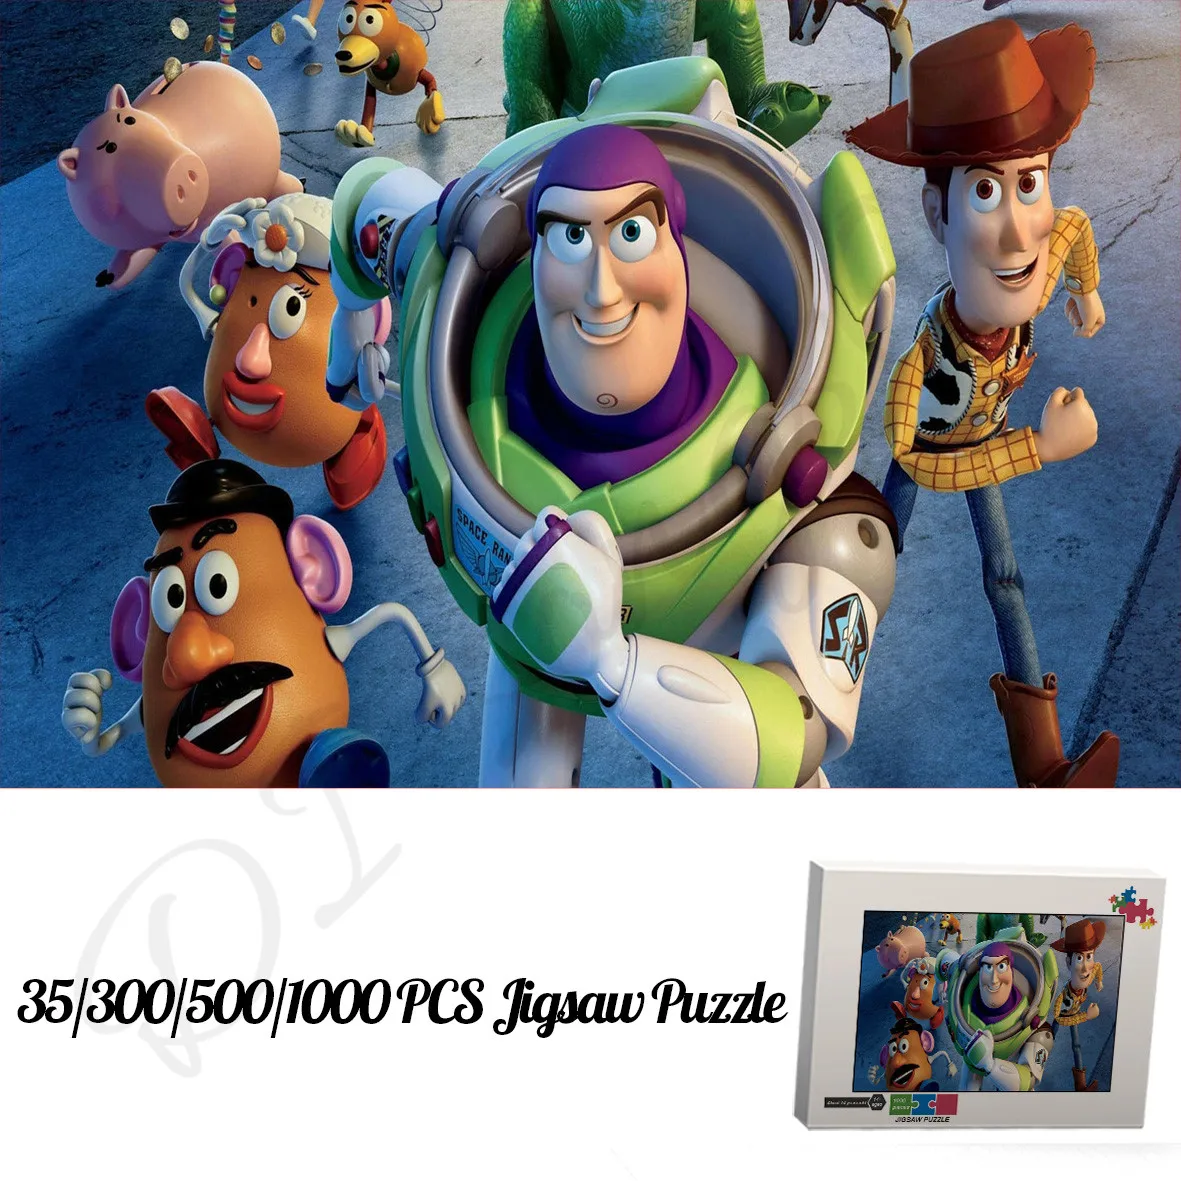 

Пазлы из мультфильма «История игрушек» Disney, пазлы 35, 300, 500, деревянные пазлы с коробкой, уникальные Обучающие игрушки и хобби